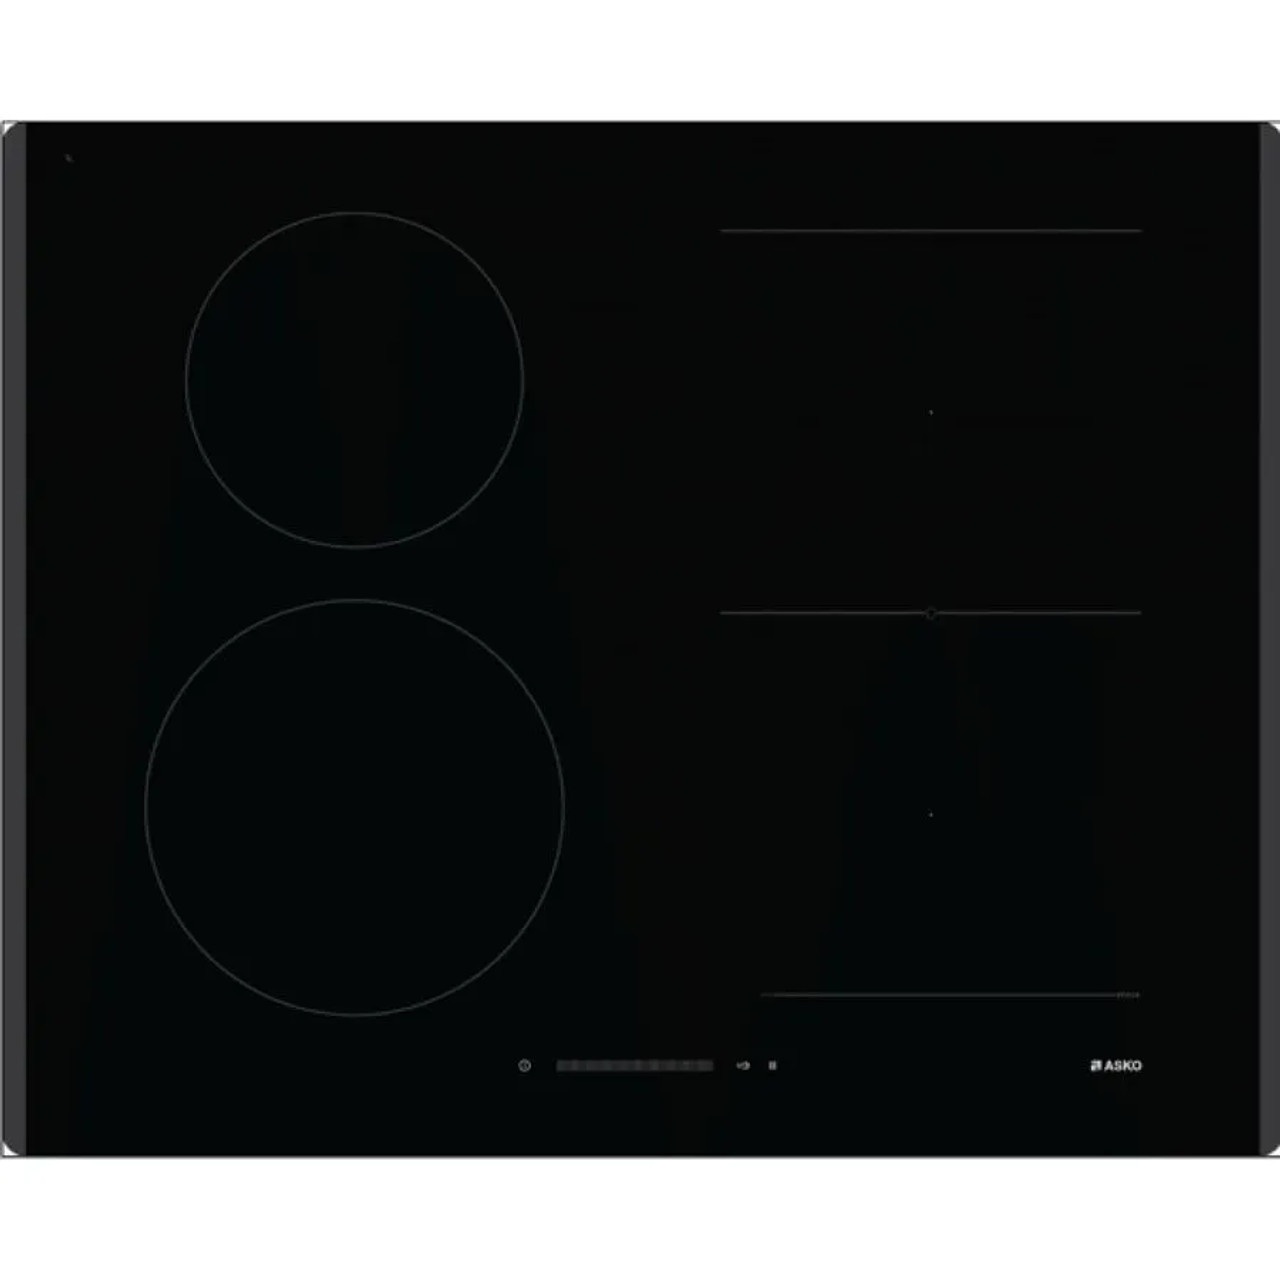 HI1621G - 60cm Induction Cooktop  - Black